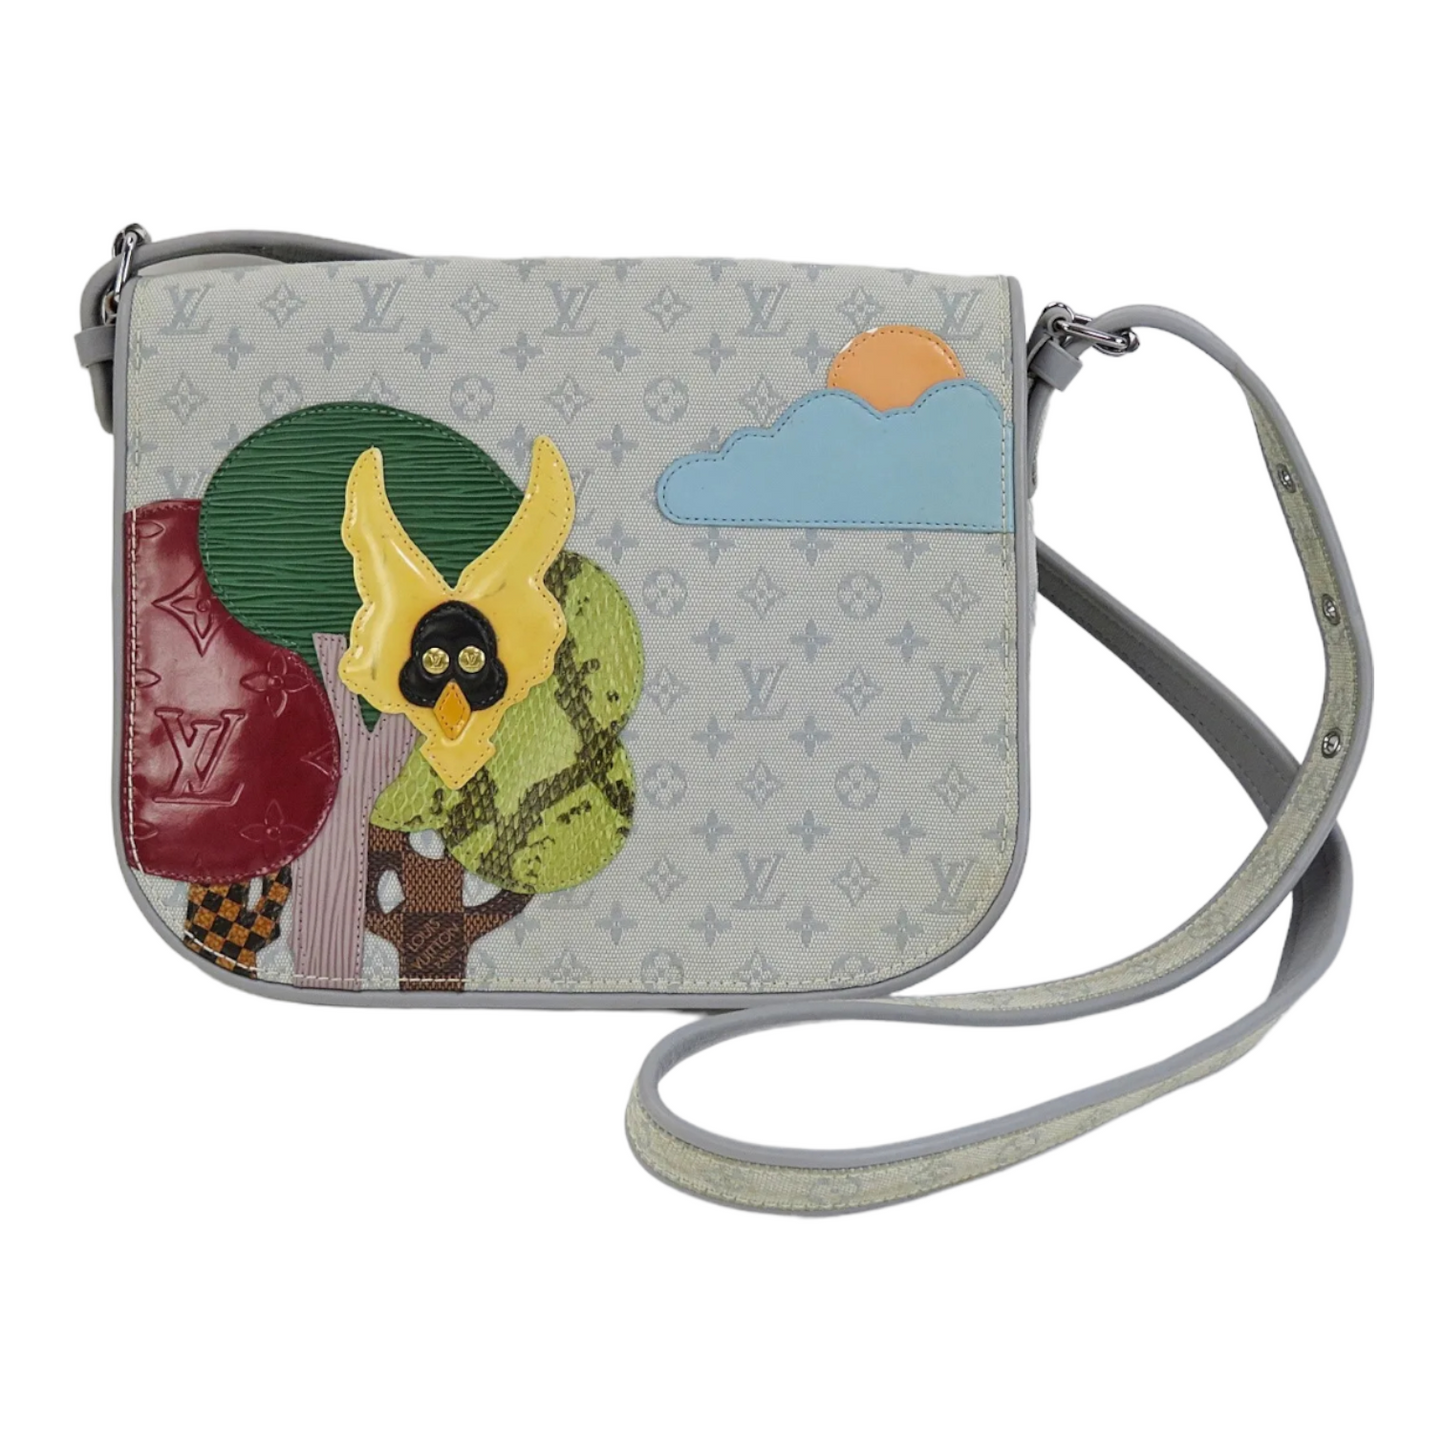 Conte de fées cloth handbag Louis Vuitton Beige in Cloth - 30492962